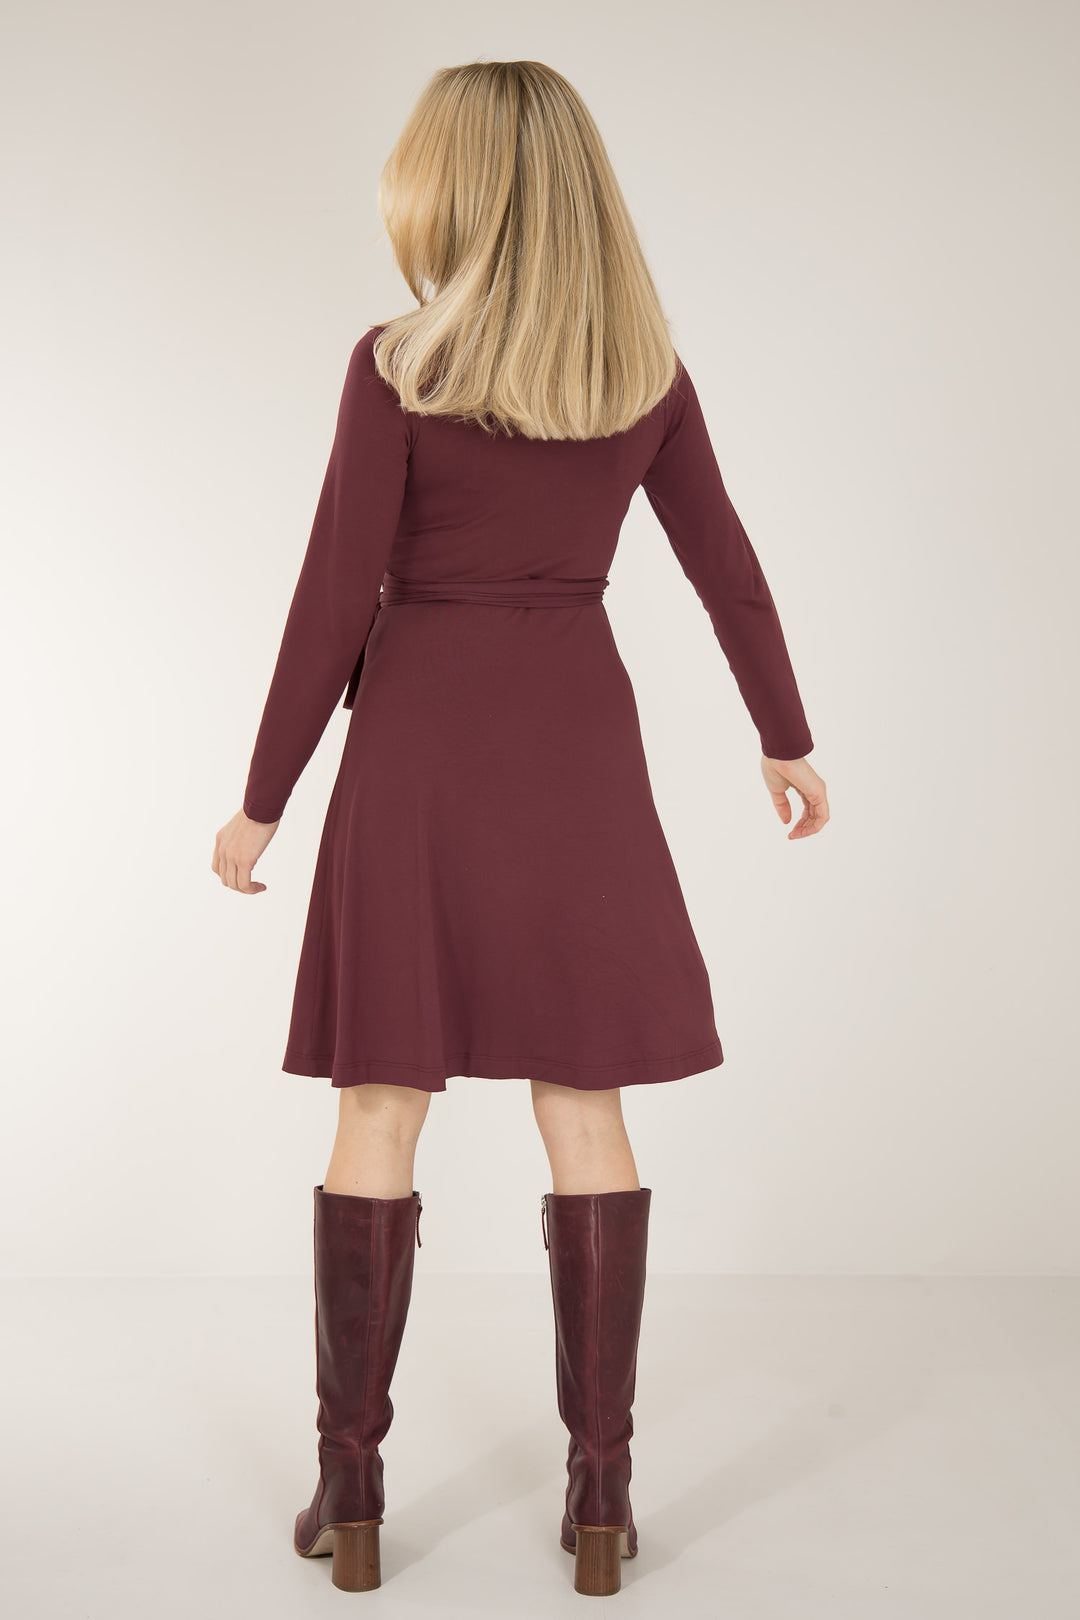 Bestie short wrap jersey dress - Burgundy - Knälång, brunröd omlottklänning i trikå